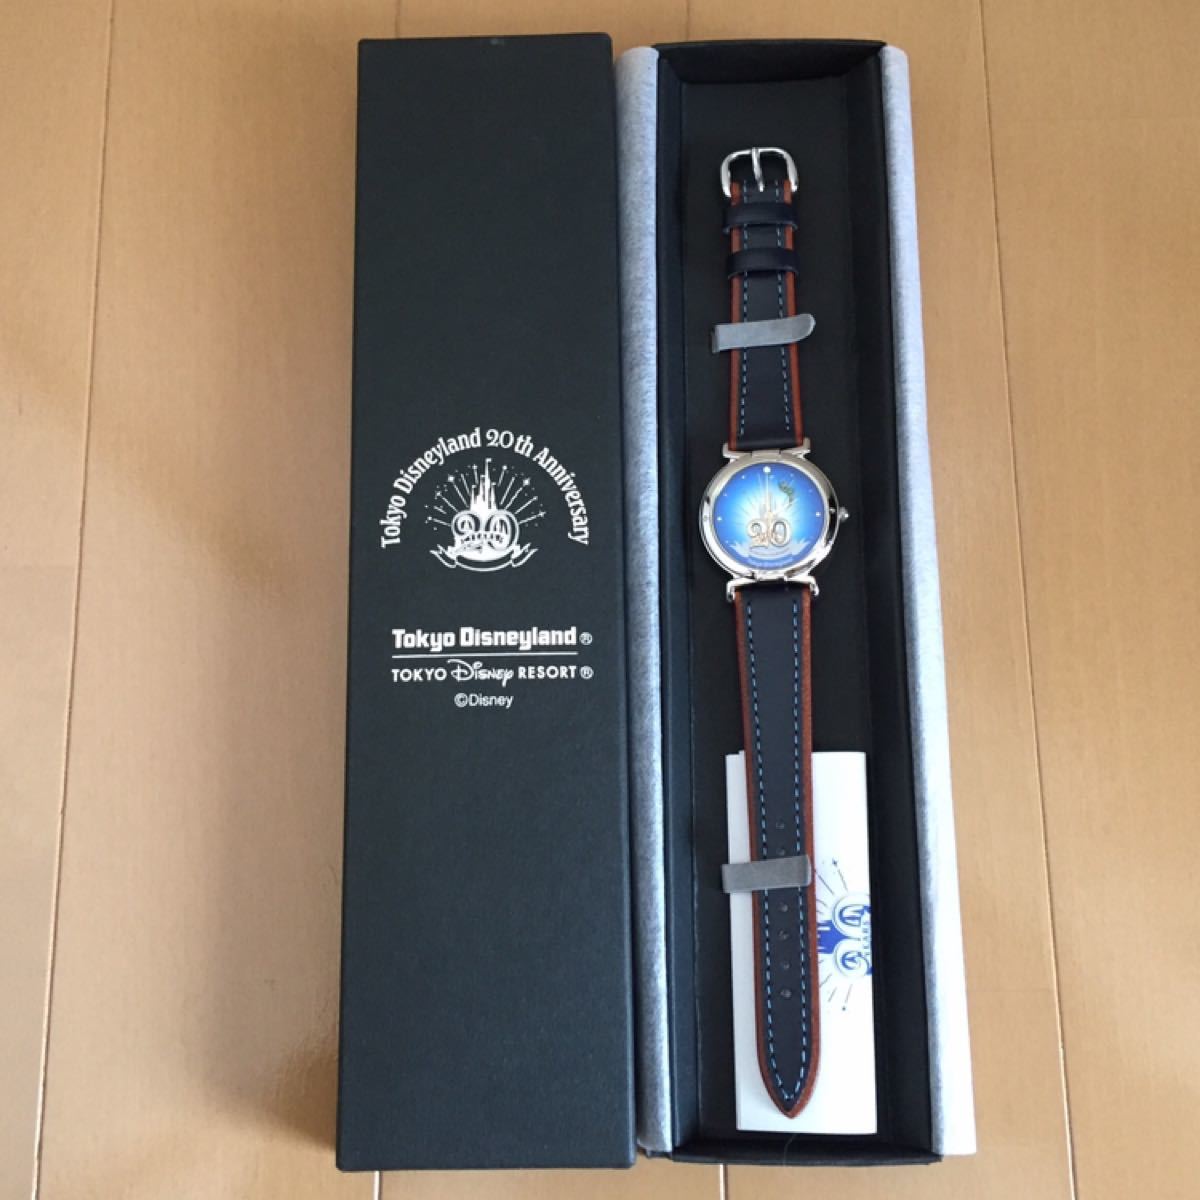 東京ディズニーランド 20th Anniversary 腕時計 